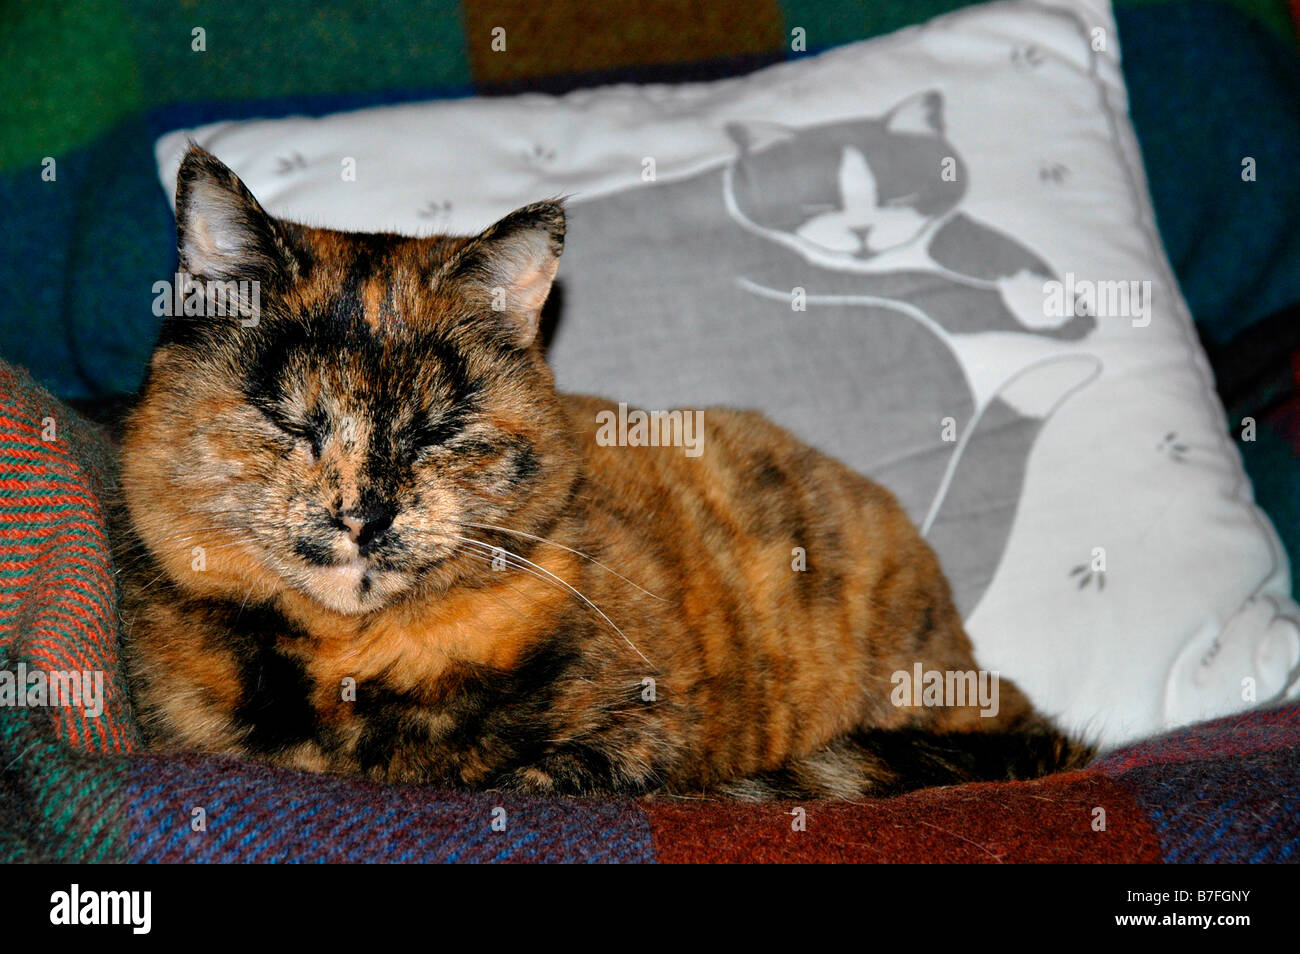 Eine alte Katze sitzt auf einem bedeckten Sofa neben einer Katze Motiv Kissen. Stockfoto